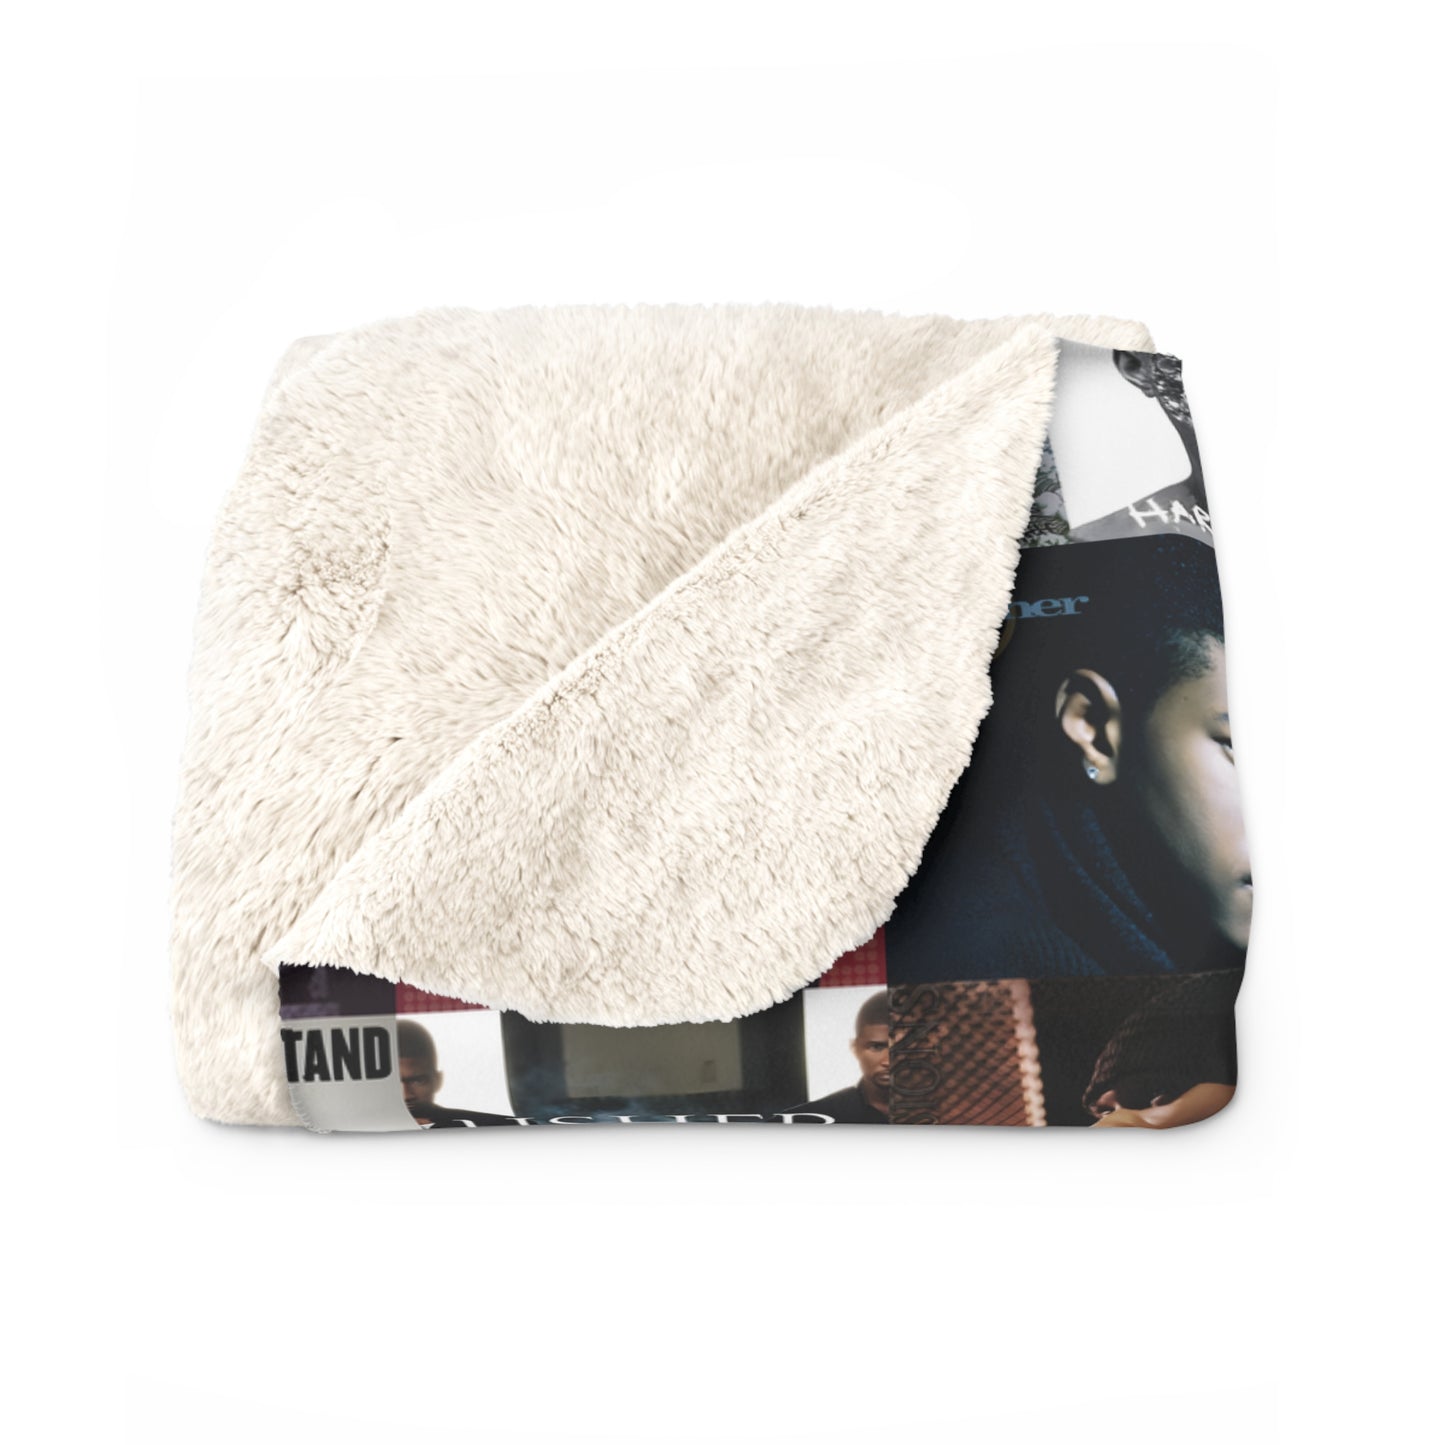 Usher Album Cover Art Mosaic Sherpa Fleece Blanket